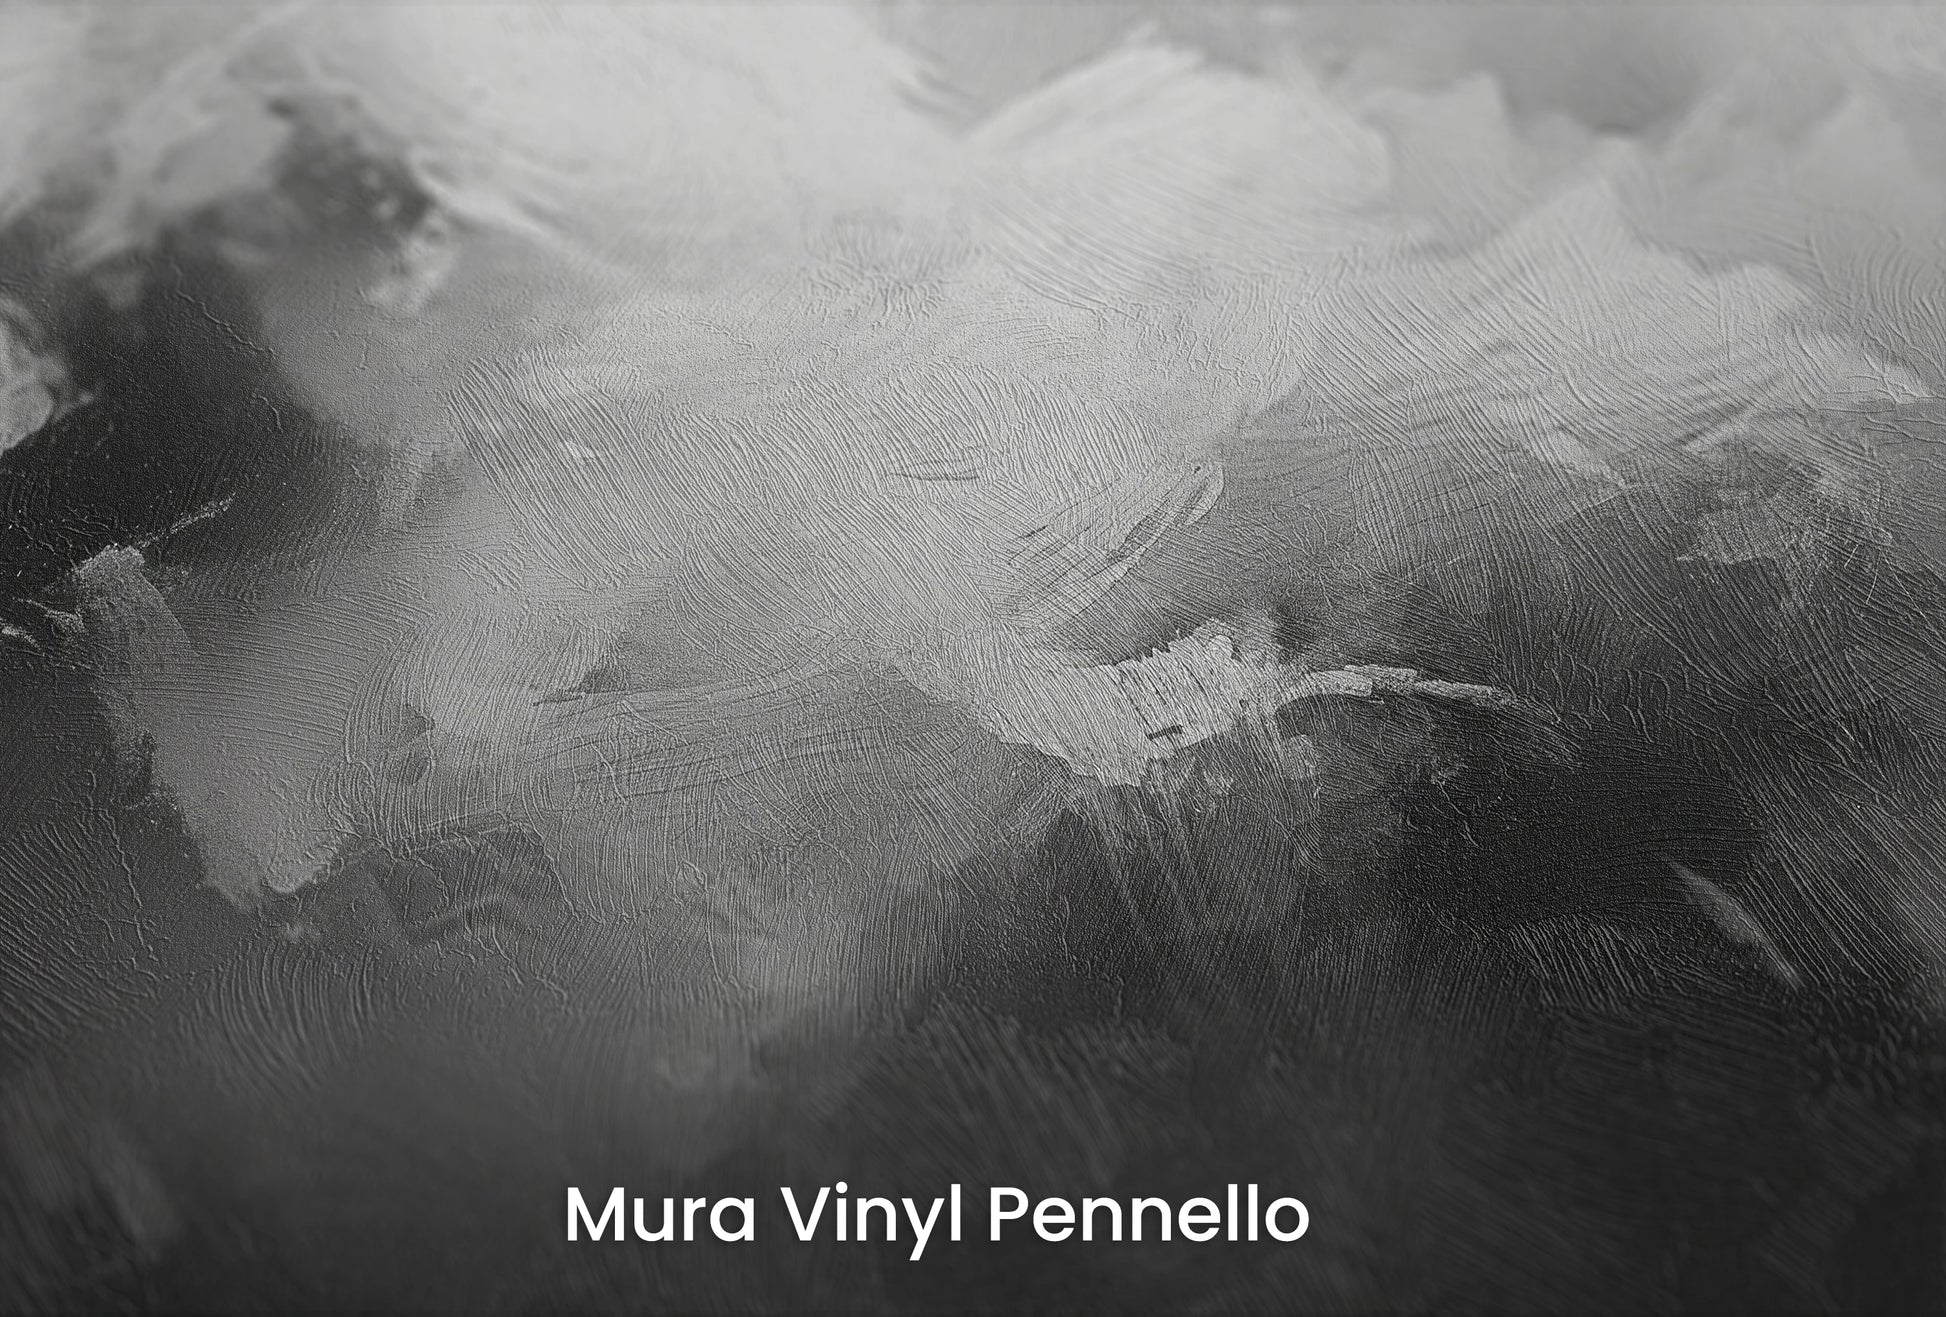 Zbliżenie na artystyczną fototapetę o nazwie Monochromatic Mood na podłożu Mura Vinyl Pennello - faktura pociągnięć pędzla malarskiego.